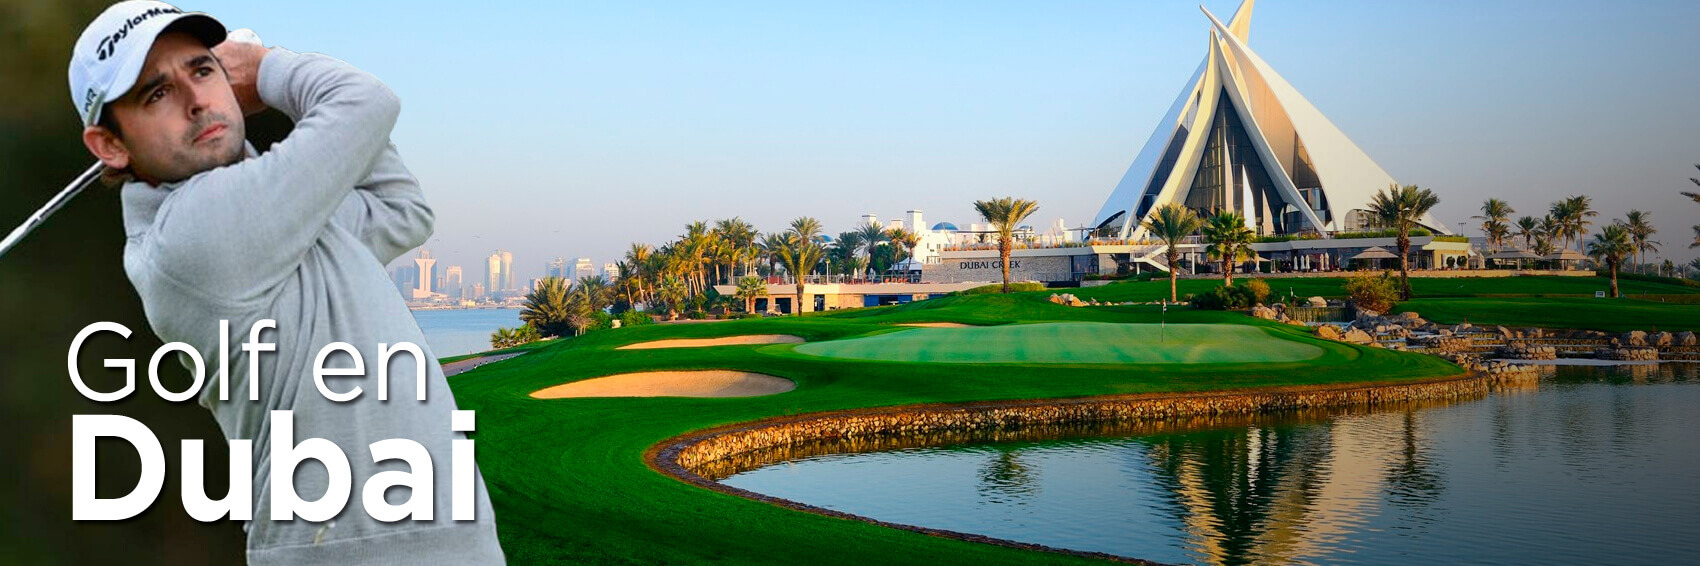 6 noches en Dubái con 3 días de golf